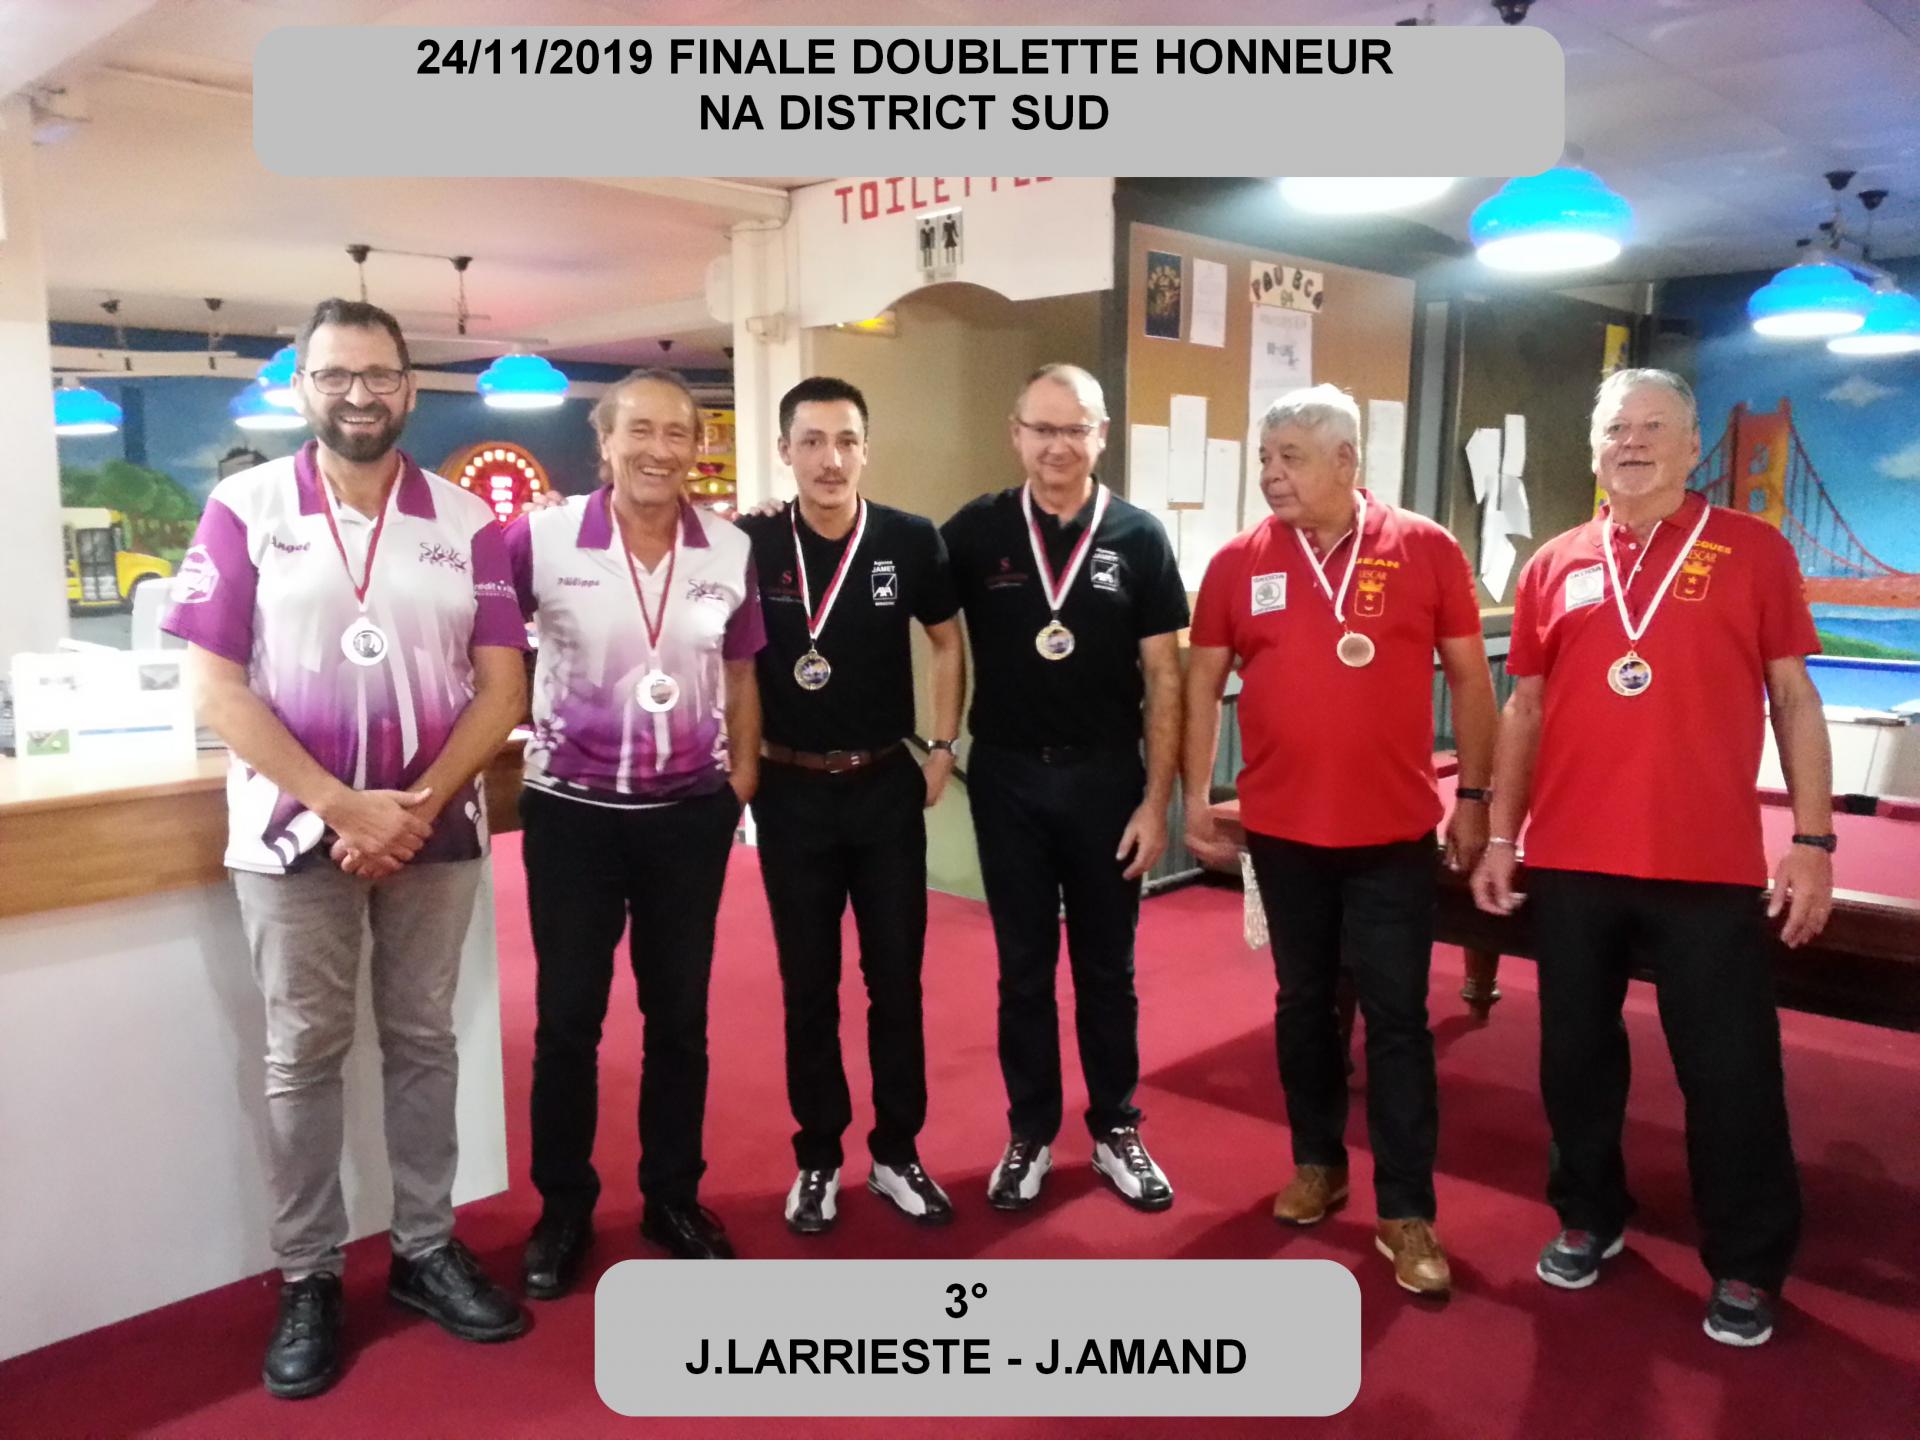 24/11/2019DOUBLETTE HONNEUR FINALE NA DISTRICT SUD